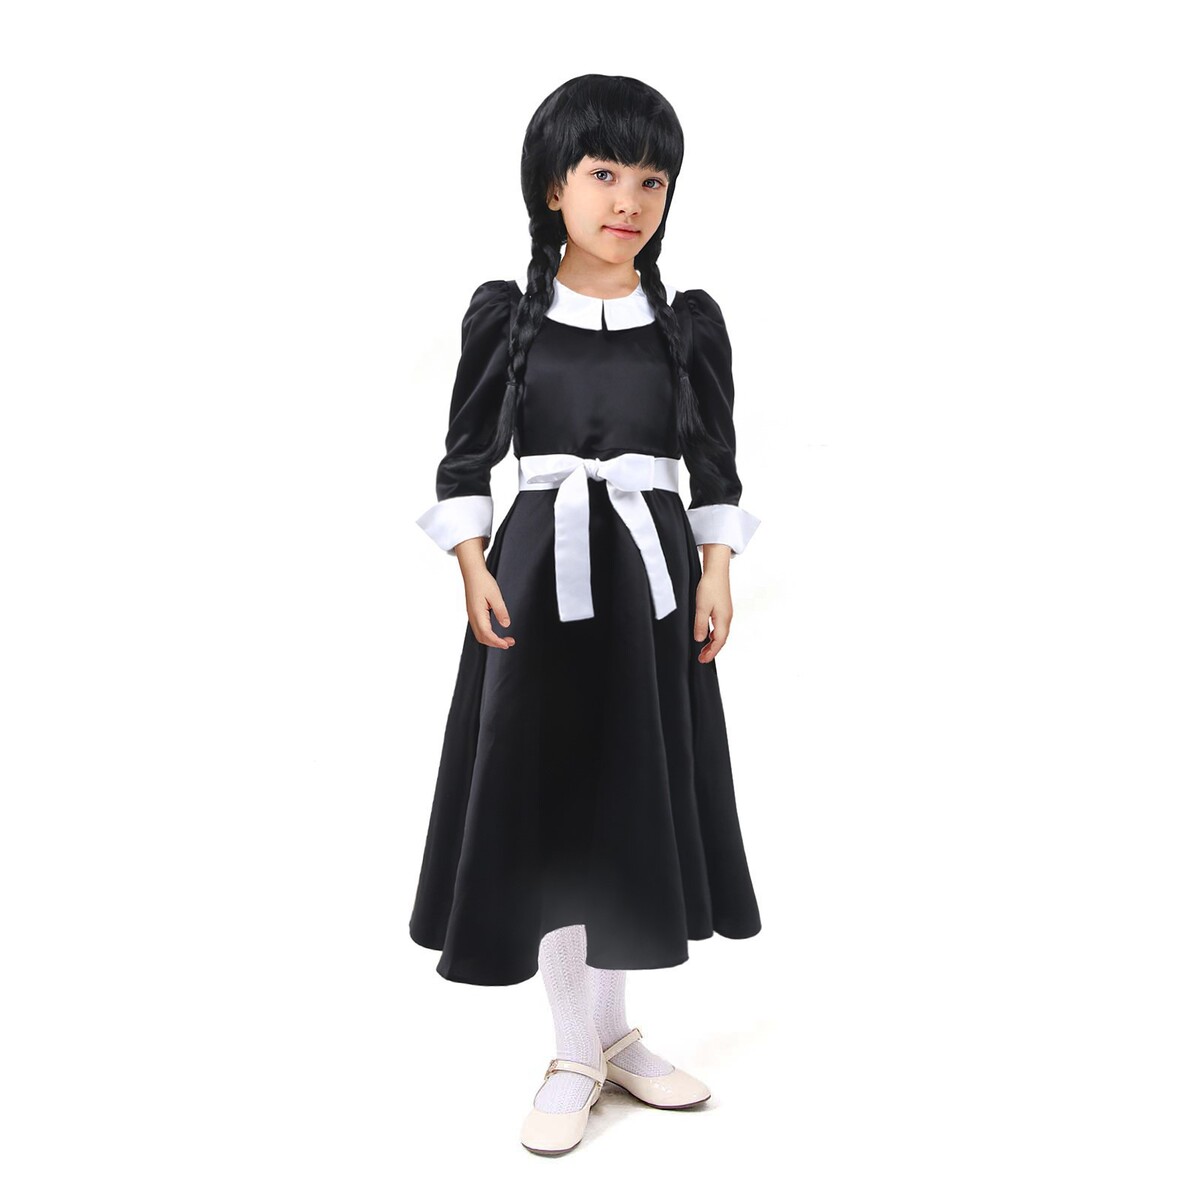 Карнавальное черное платье с белым воротником,атлас,п/э,р-р42,р158 ной атлас по химическому пилингу